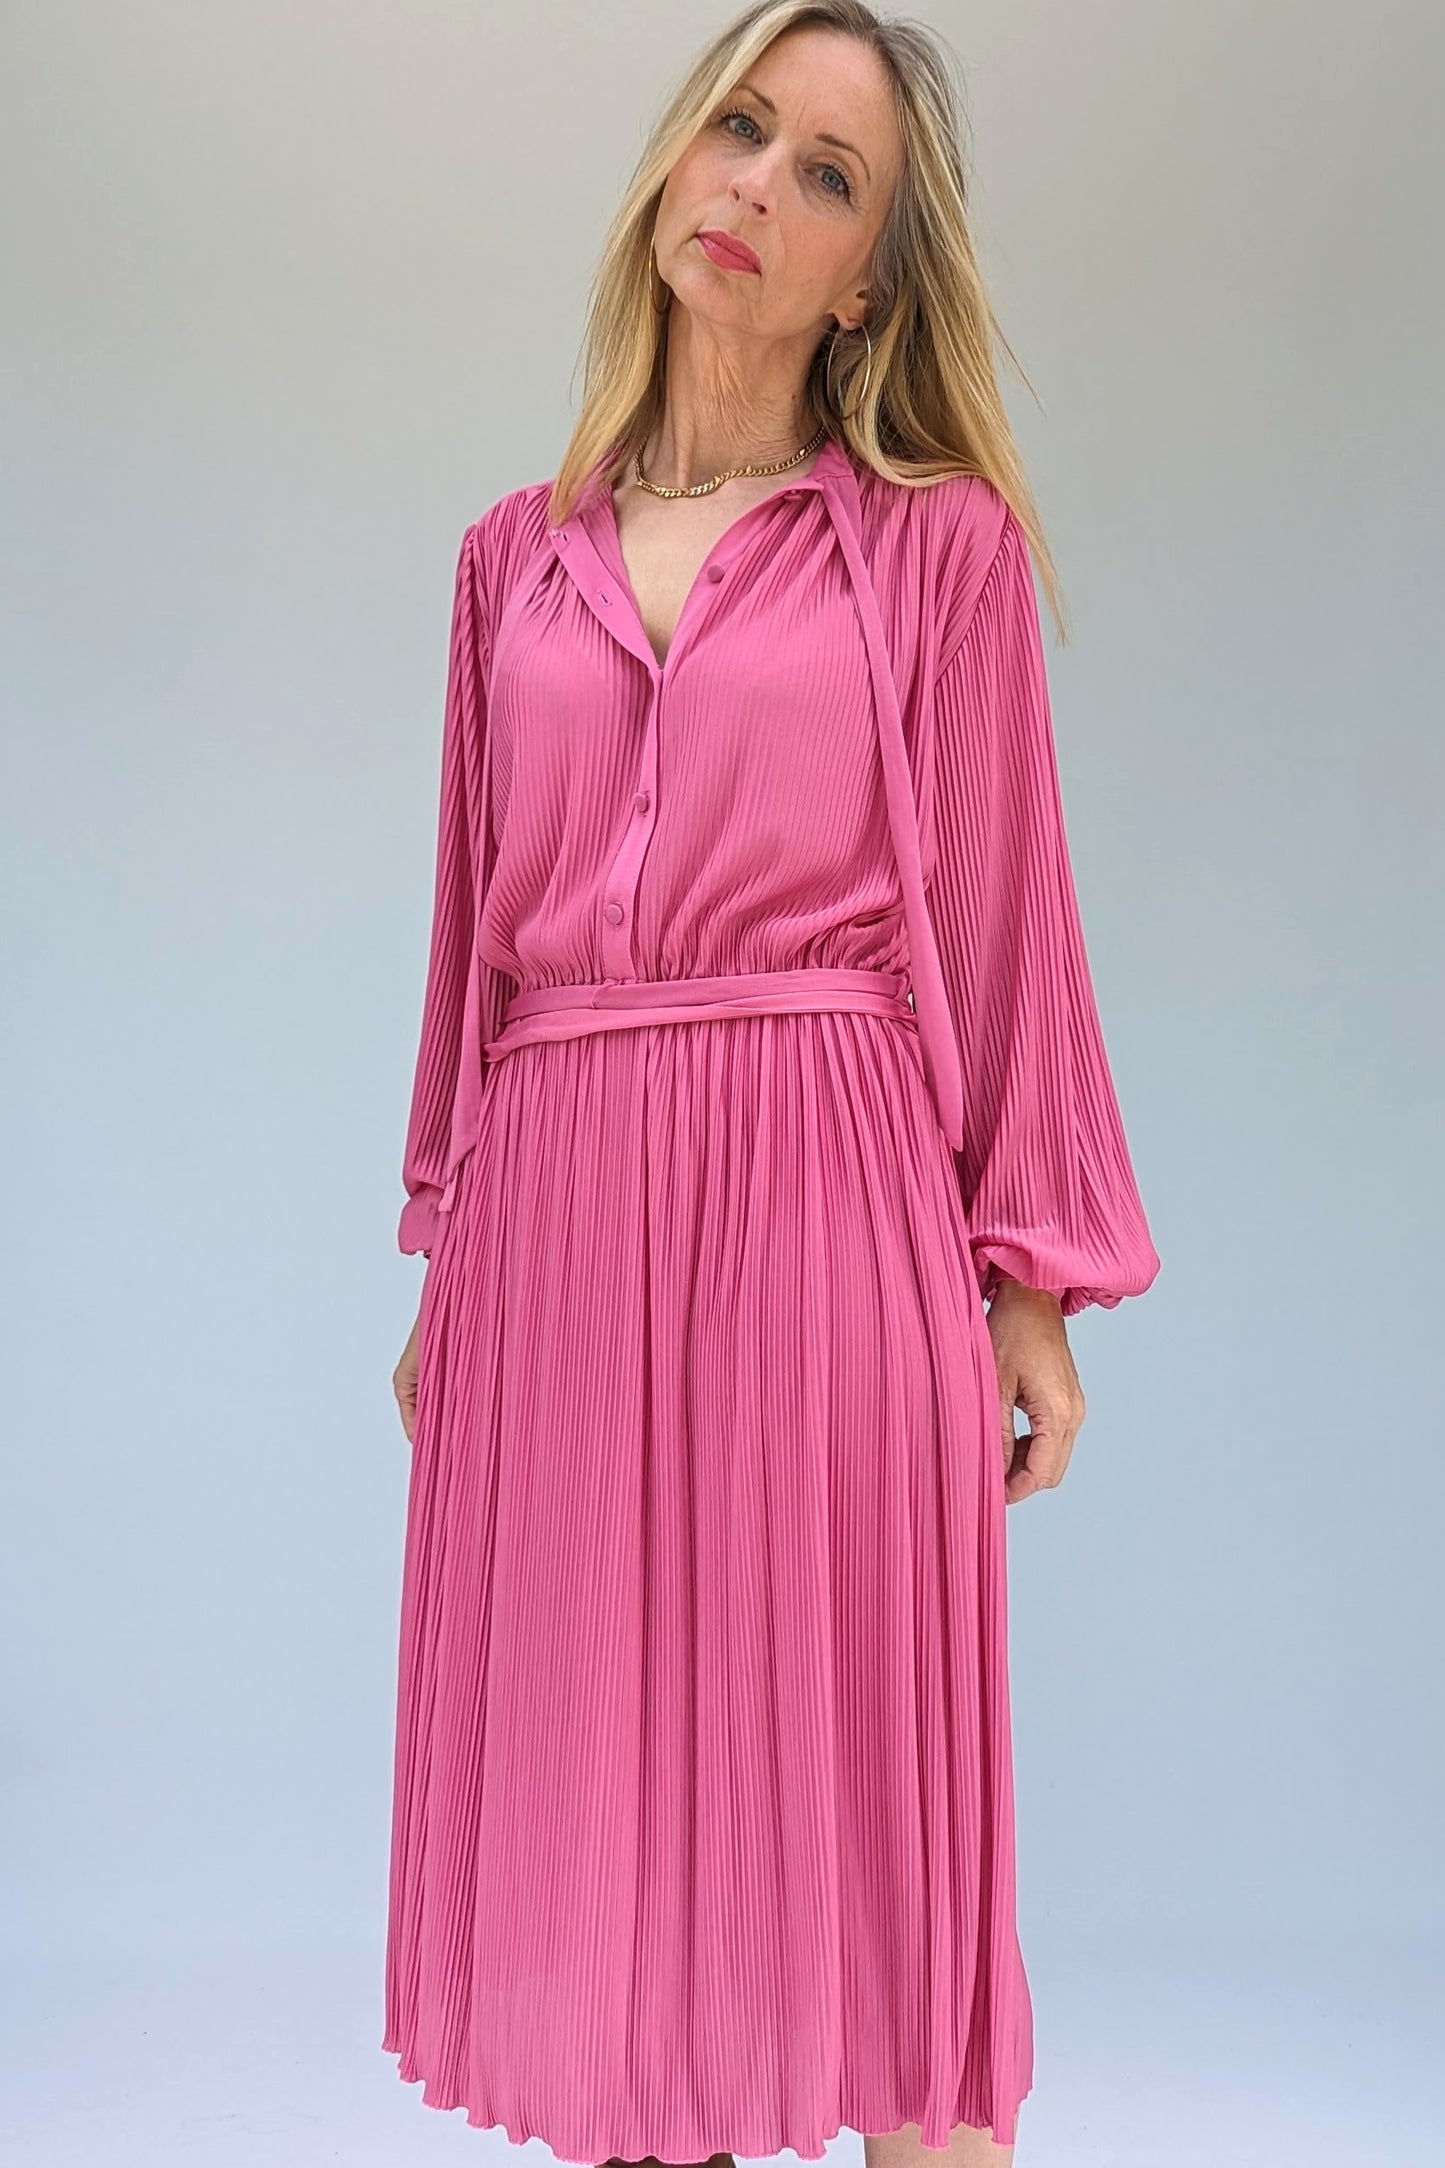 Vintage pink dress